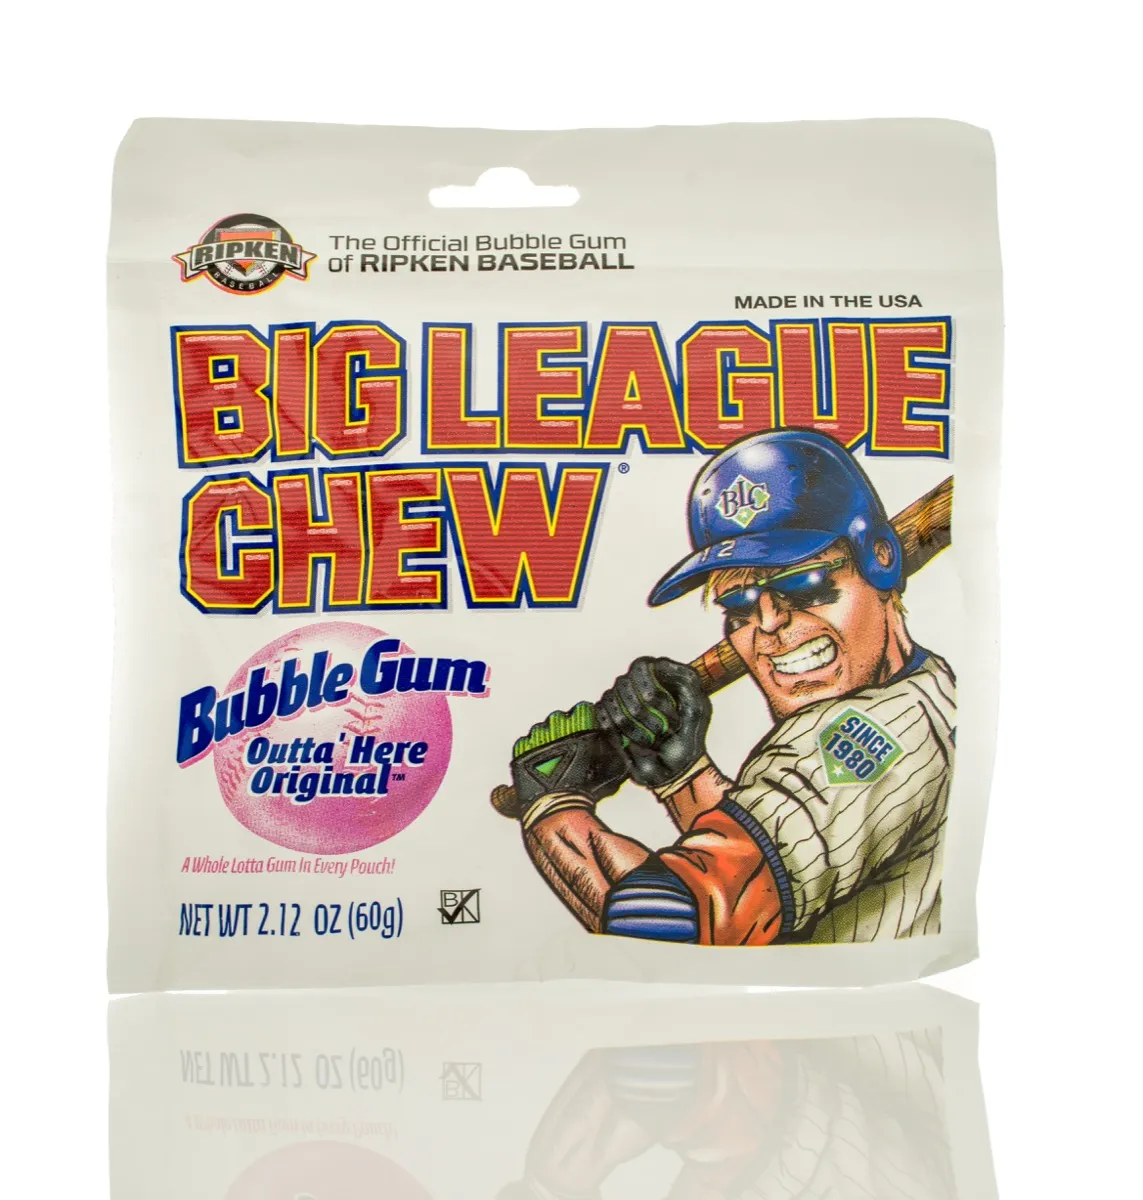 Winneconne, WI - 4 March 2016: A package of big league chew bubble gum - Image